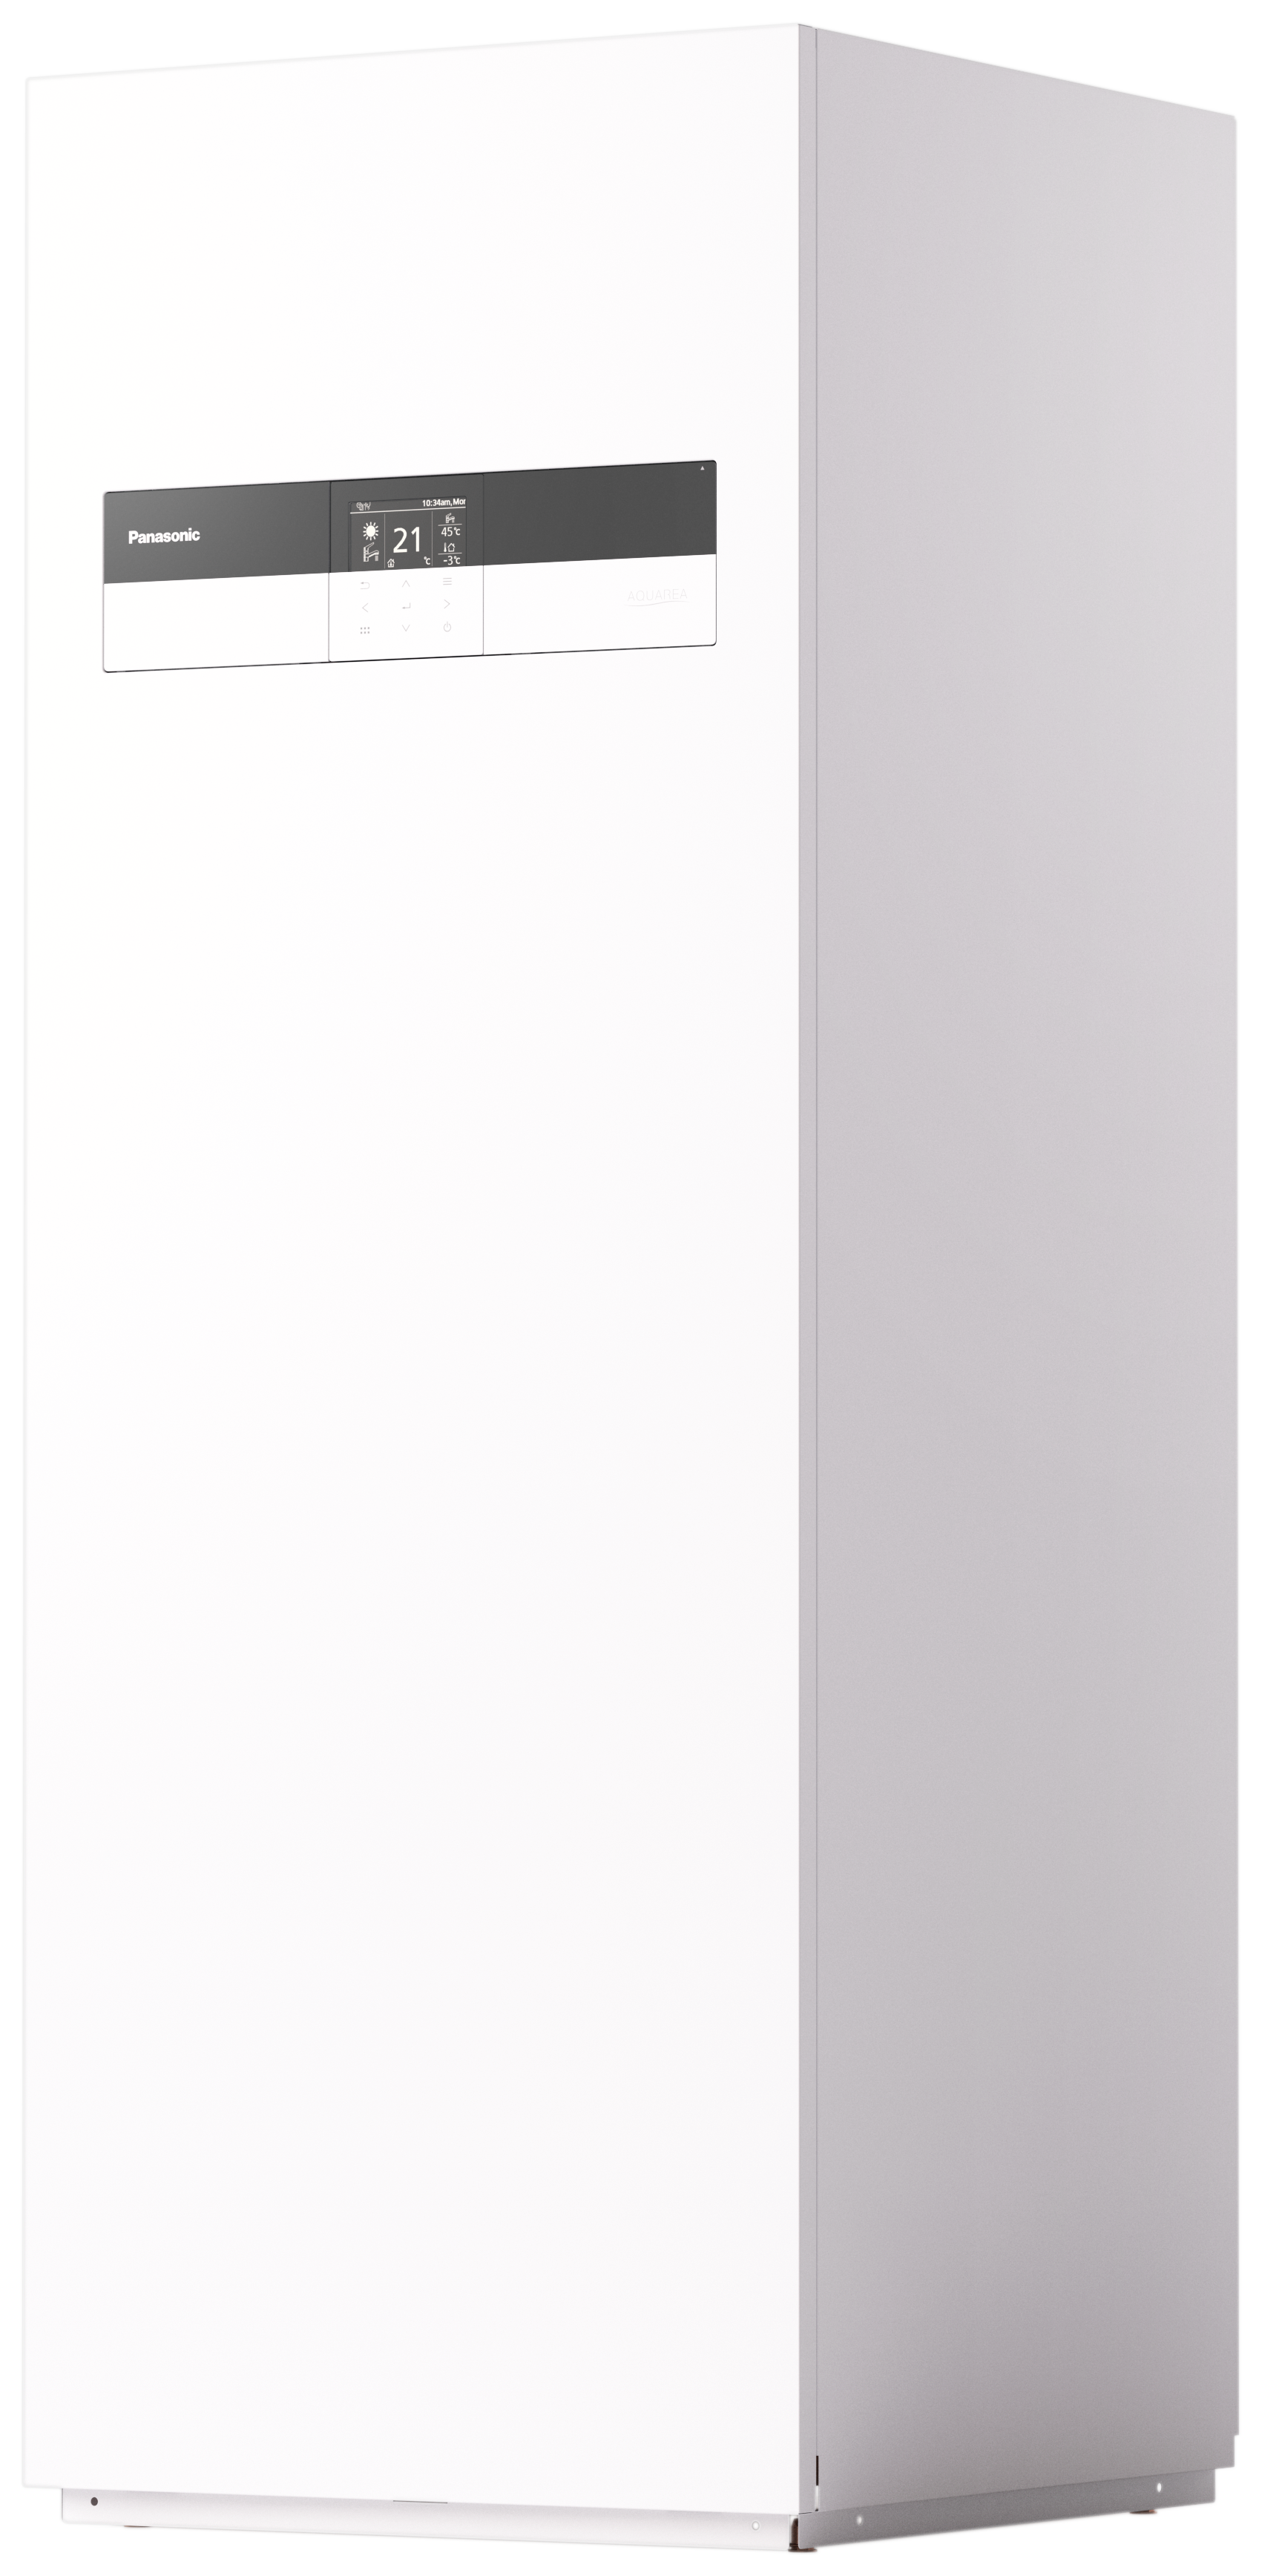 Hochaufgelöste Aufnahme eines Innengerätes der Aquarea-Wärmepumpen von Panasonic.